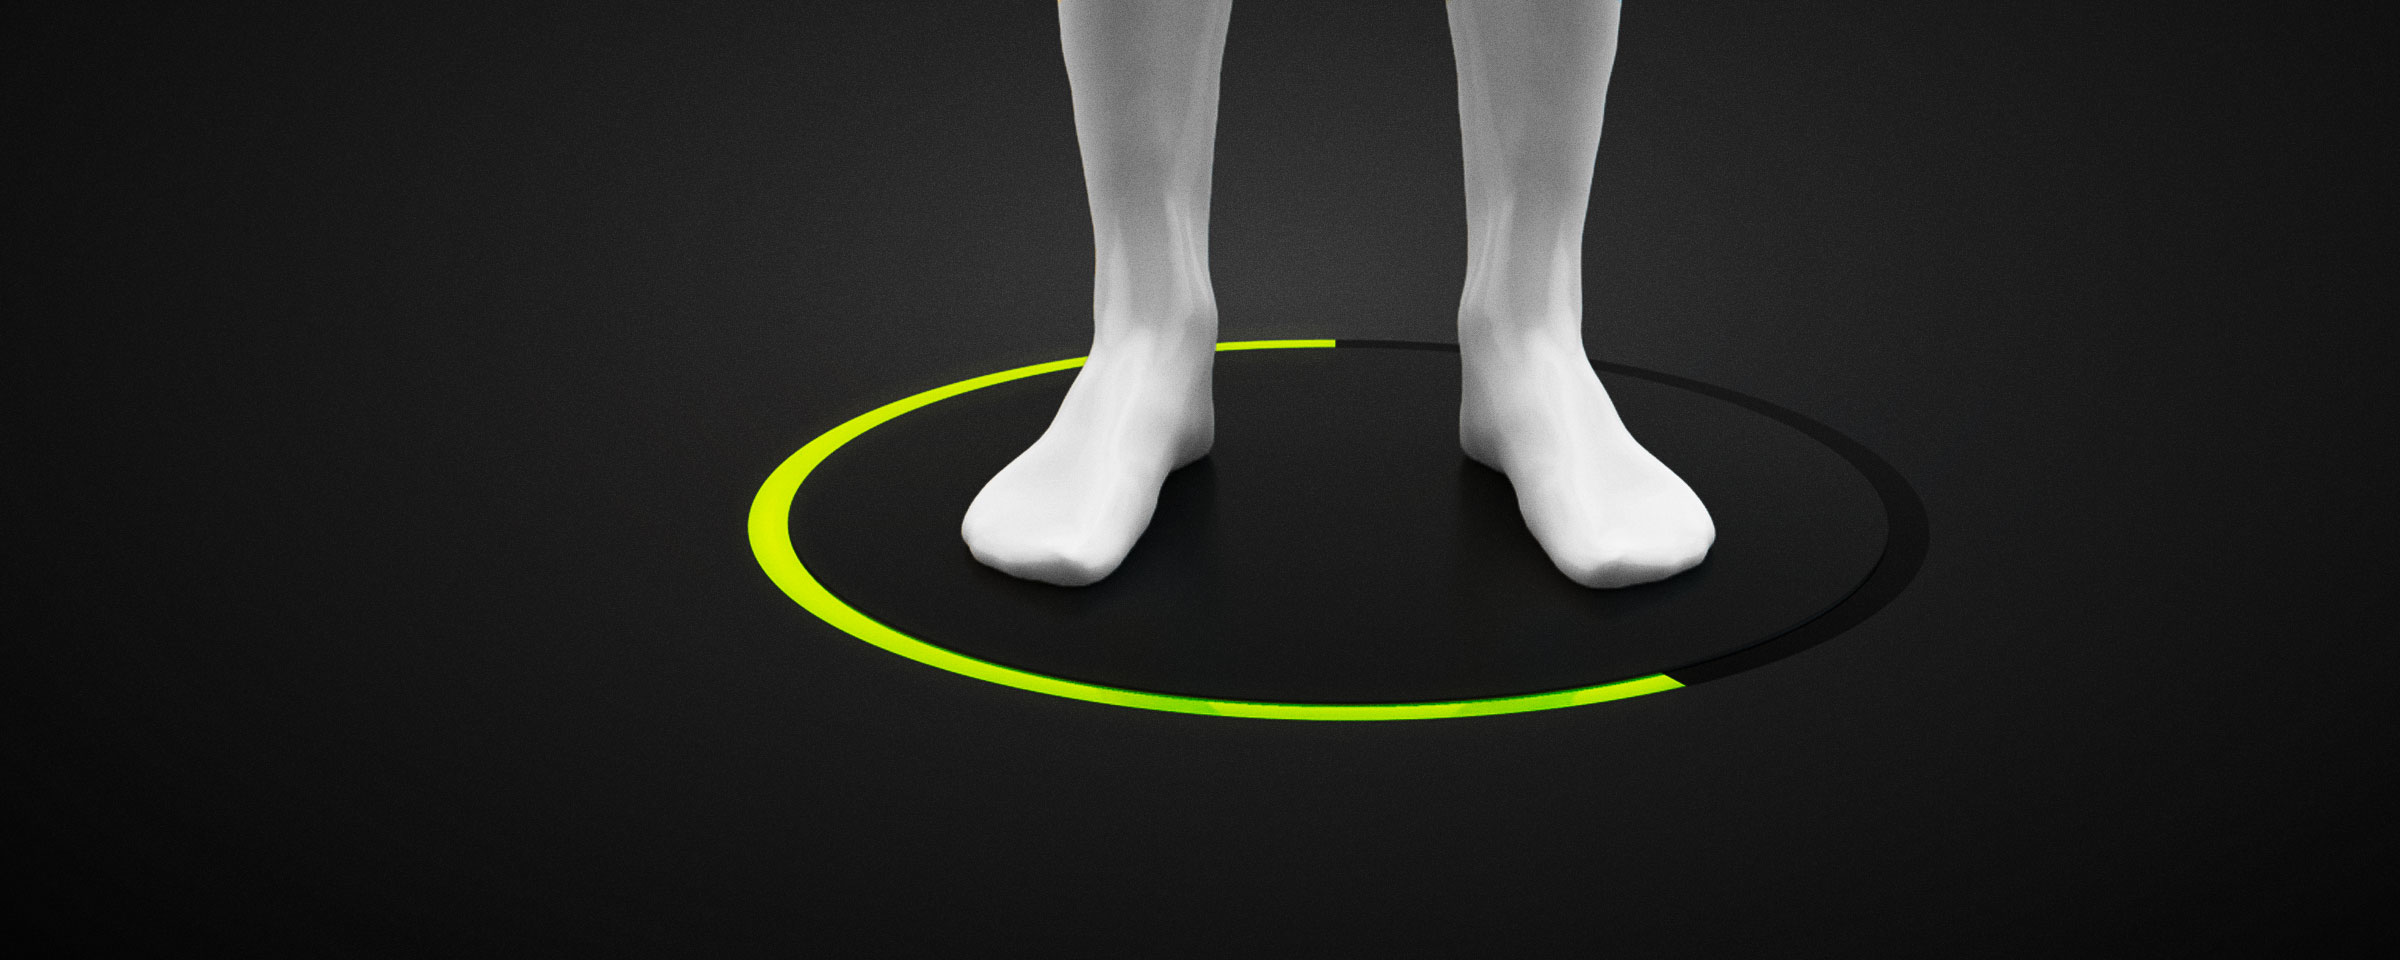 Lightbeam scannt die Fußform der auf ihm stehenden Füße